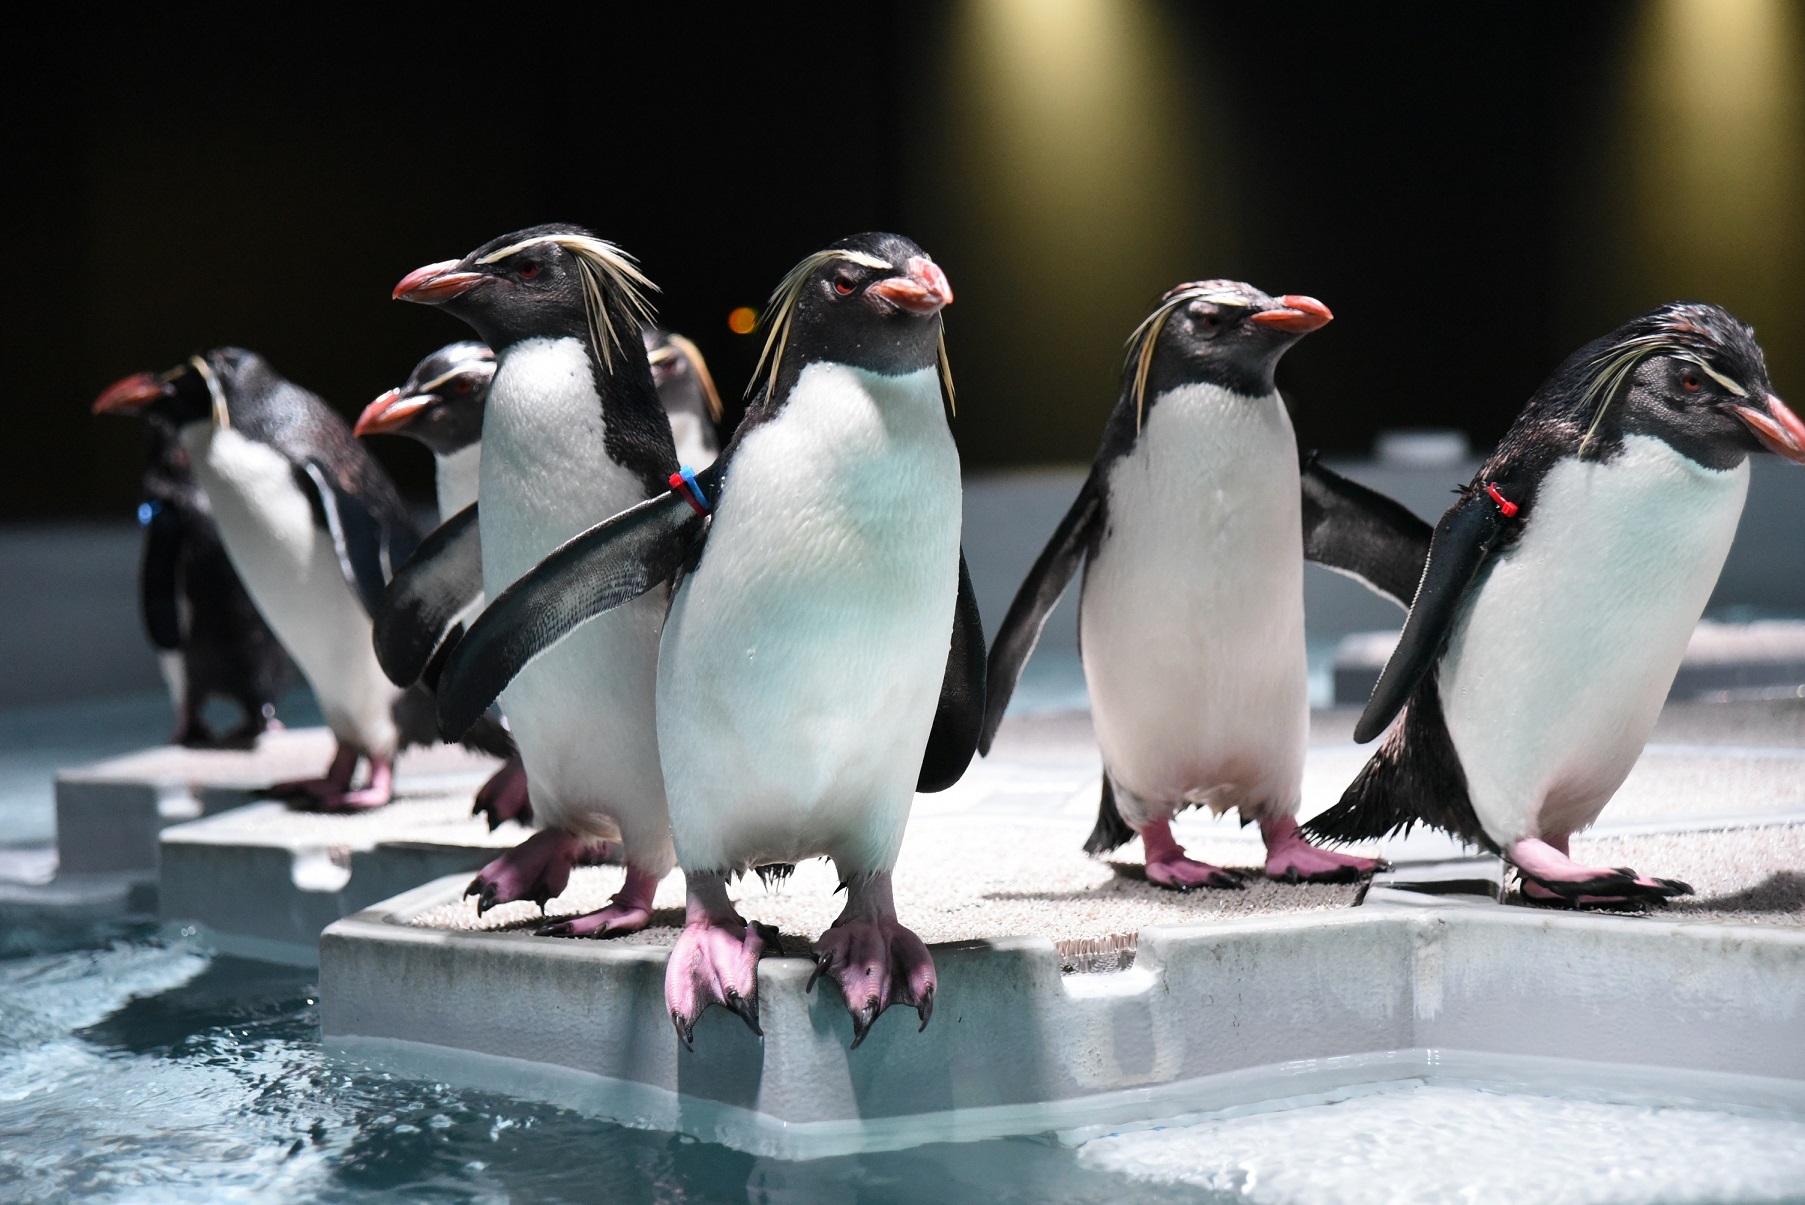 激安北海道伴自助5日 |雙主題(AOAO企鵝水族館、伊達忍者巡禮)、百選羊蹄京極町名水公園、美拍蝦夷富士、一日自由活動